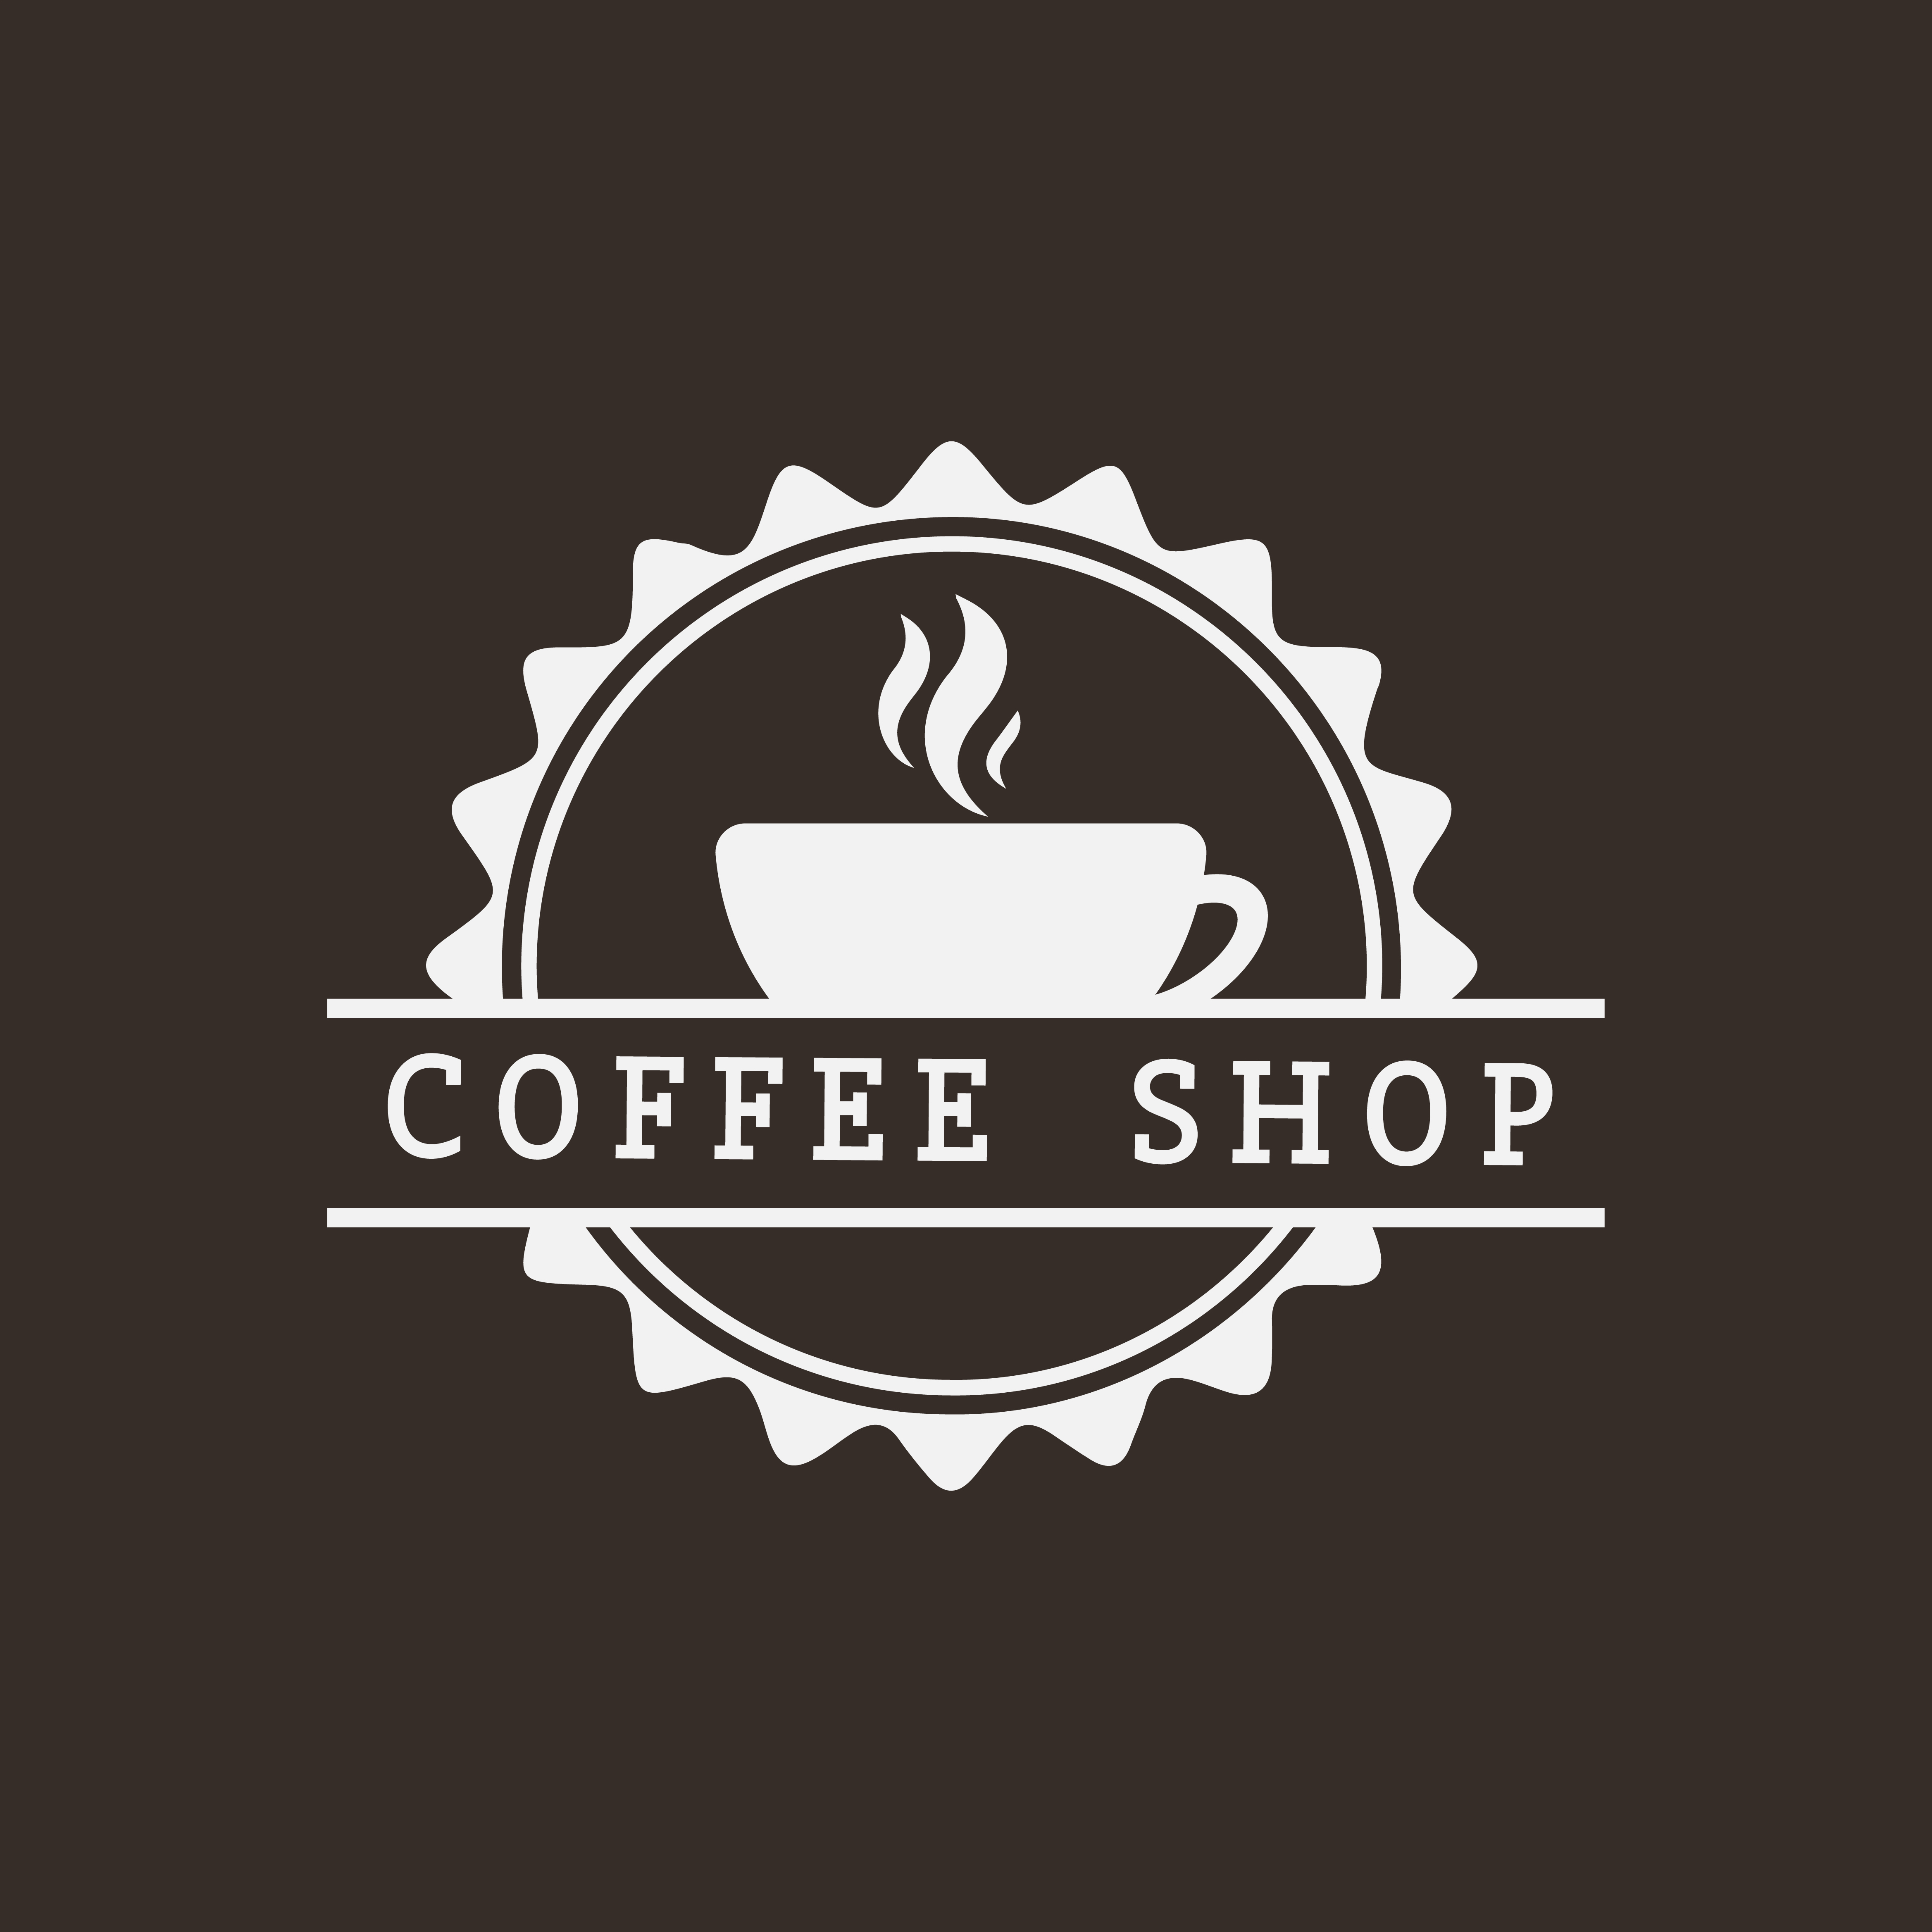 Retro coffee shop logo vector - Download Free Vectors ...